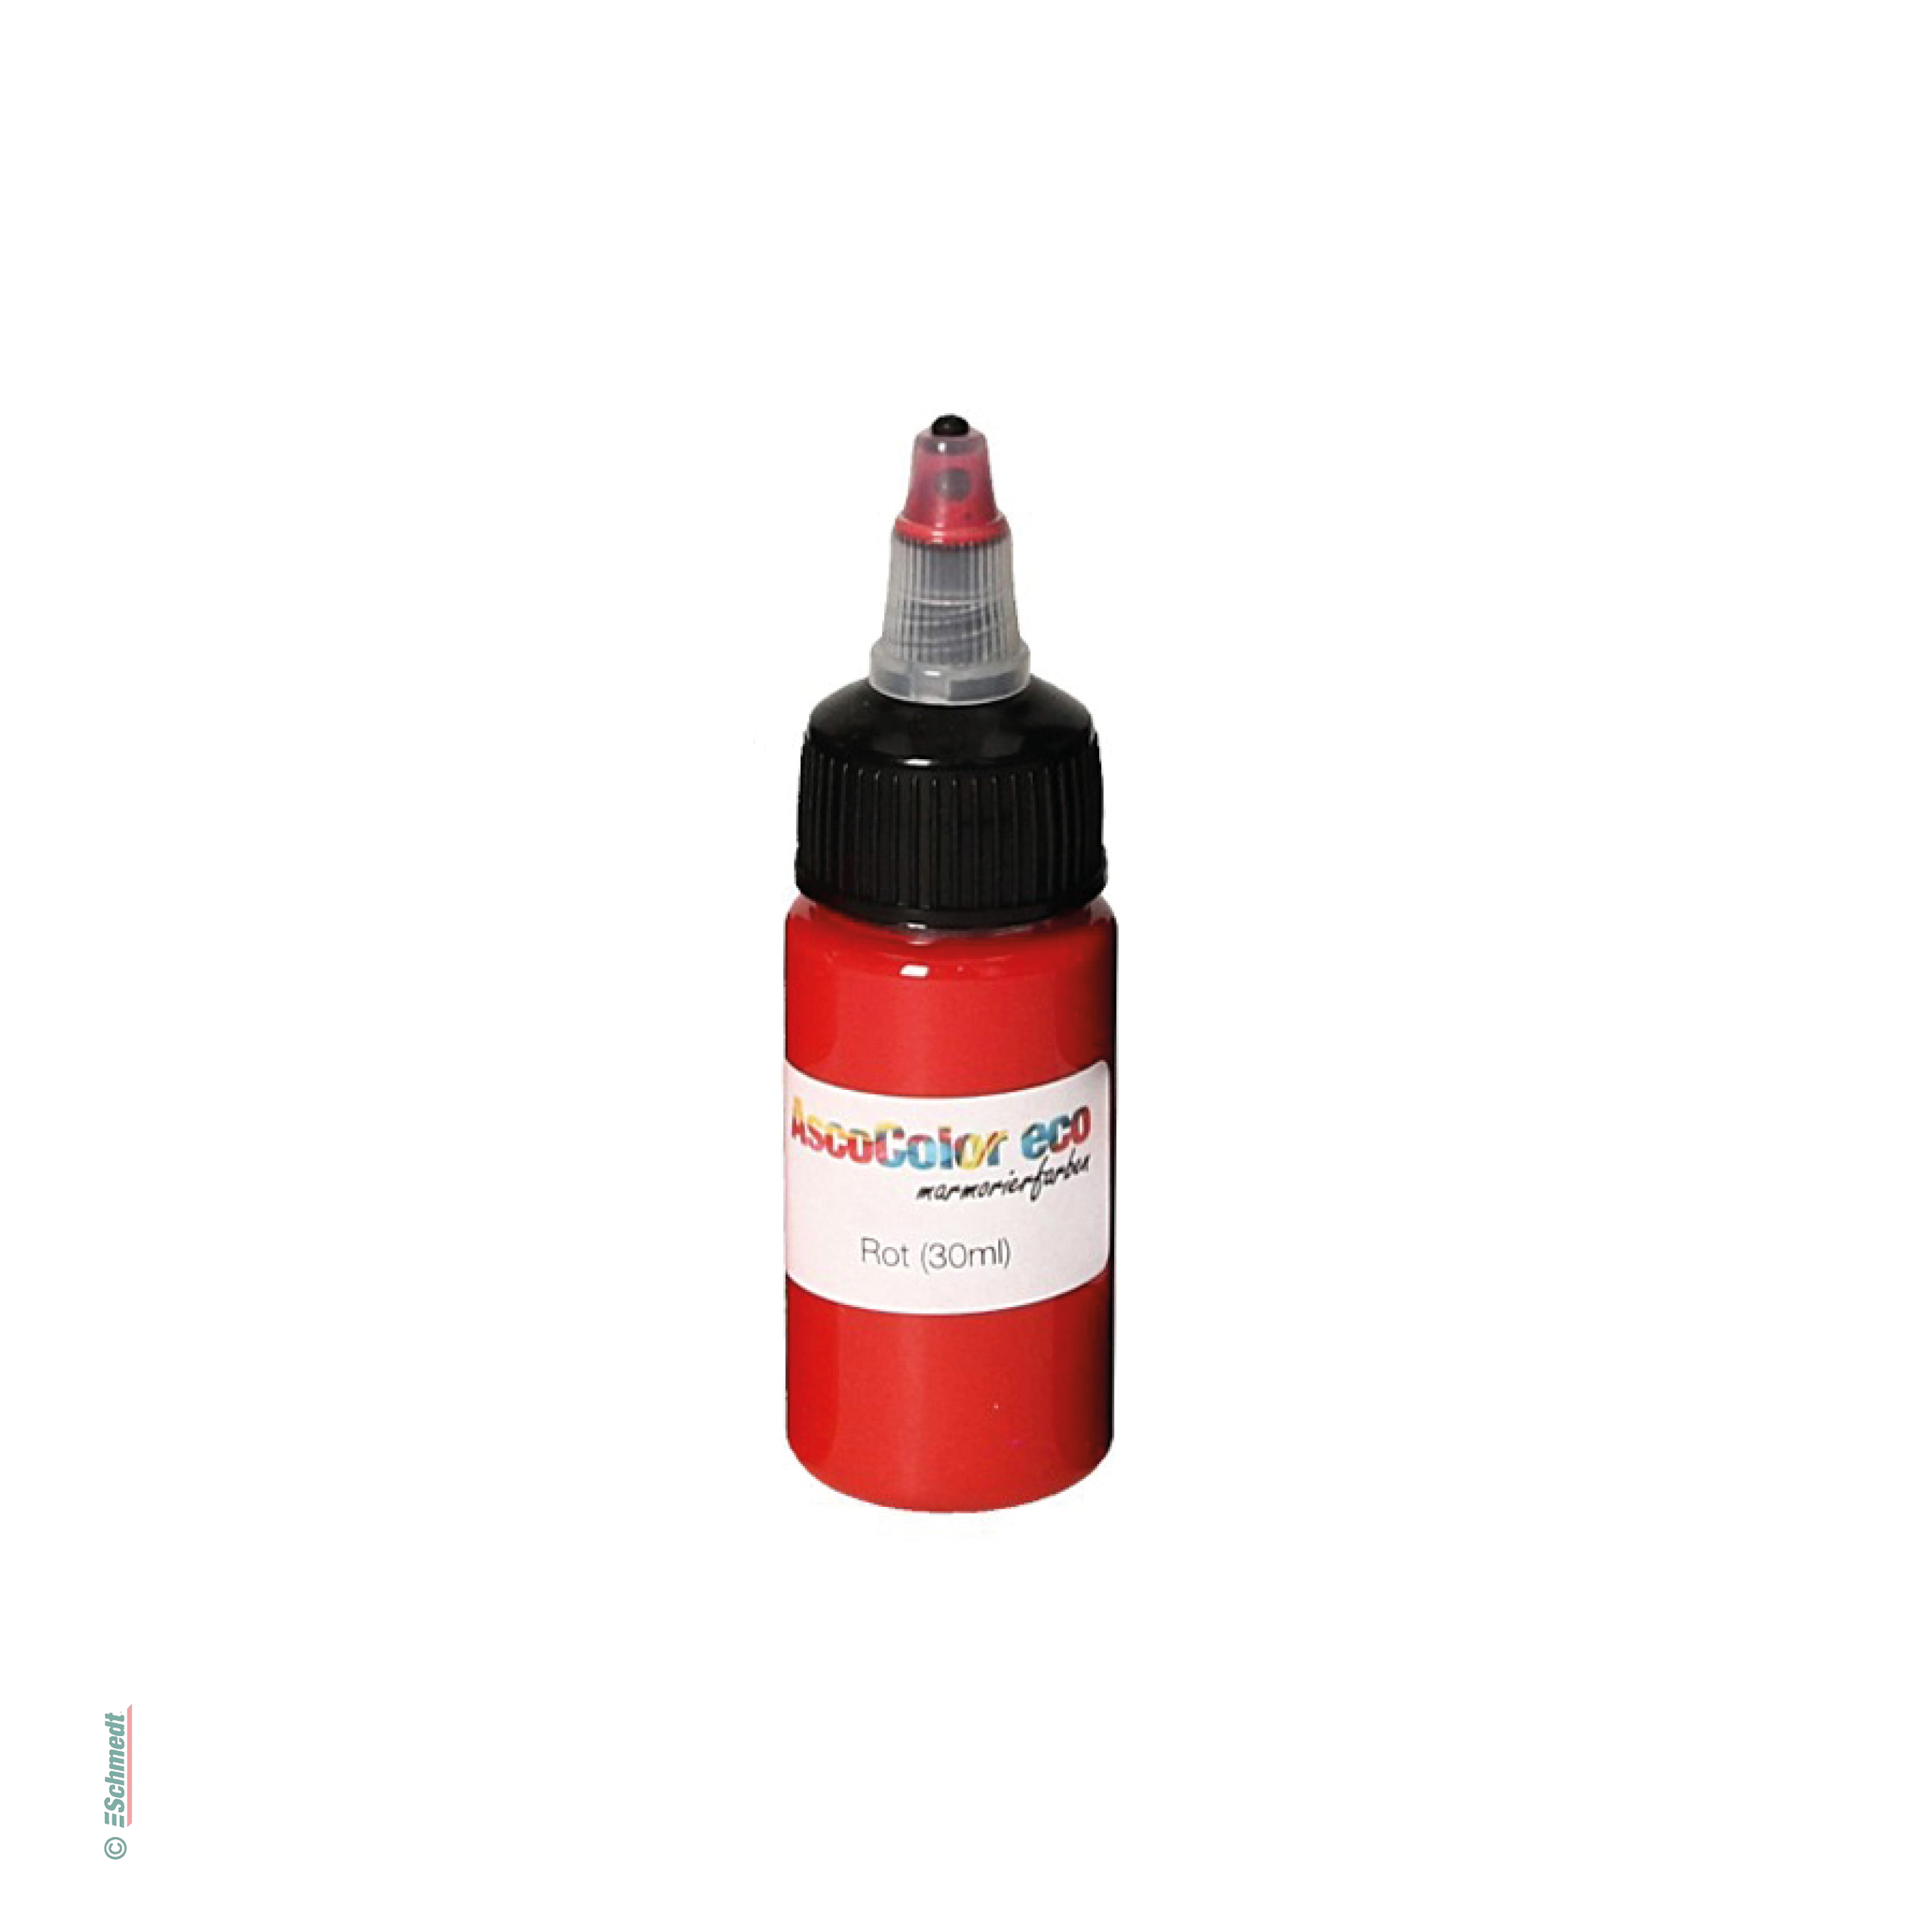 AscoColor eco - Marmorierfarbe - Farbe 103 - rot - Gebindegröße Flasche / 30 ml - zur Herstellung marmorierter Papiere...